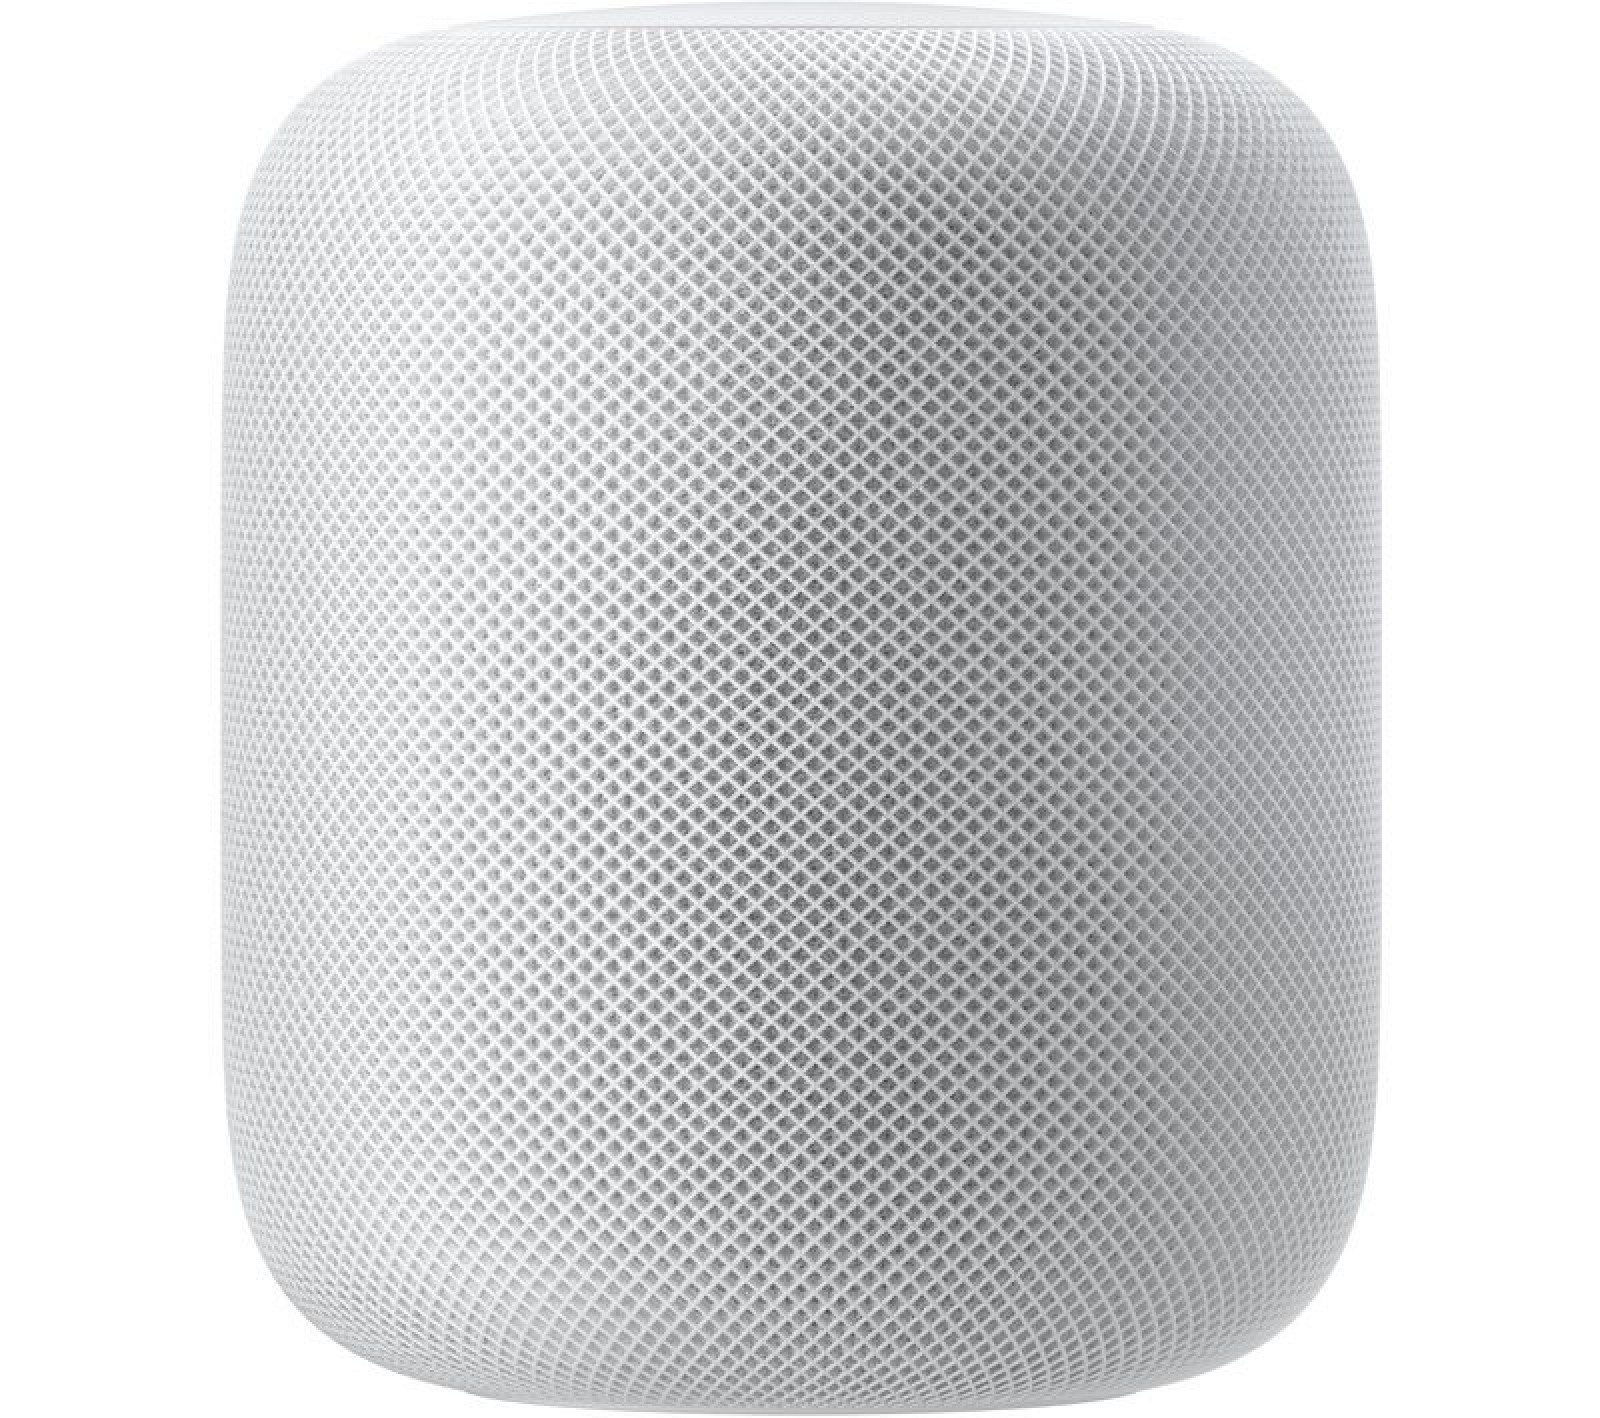 Siri da el salto al hogar con el altavoz inteligente Apple HomePod